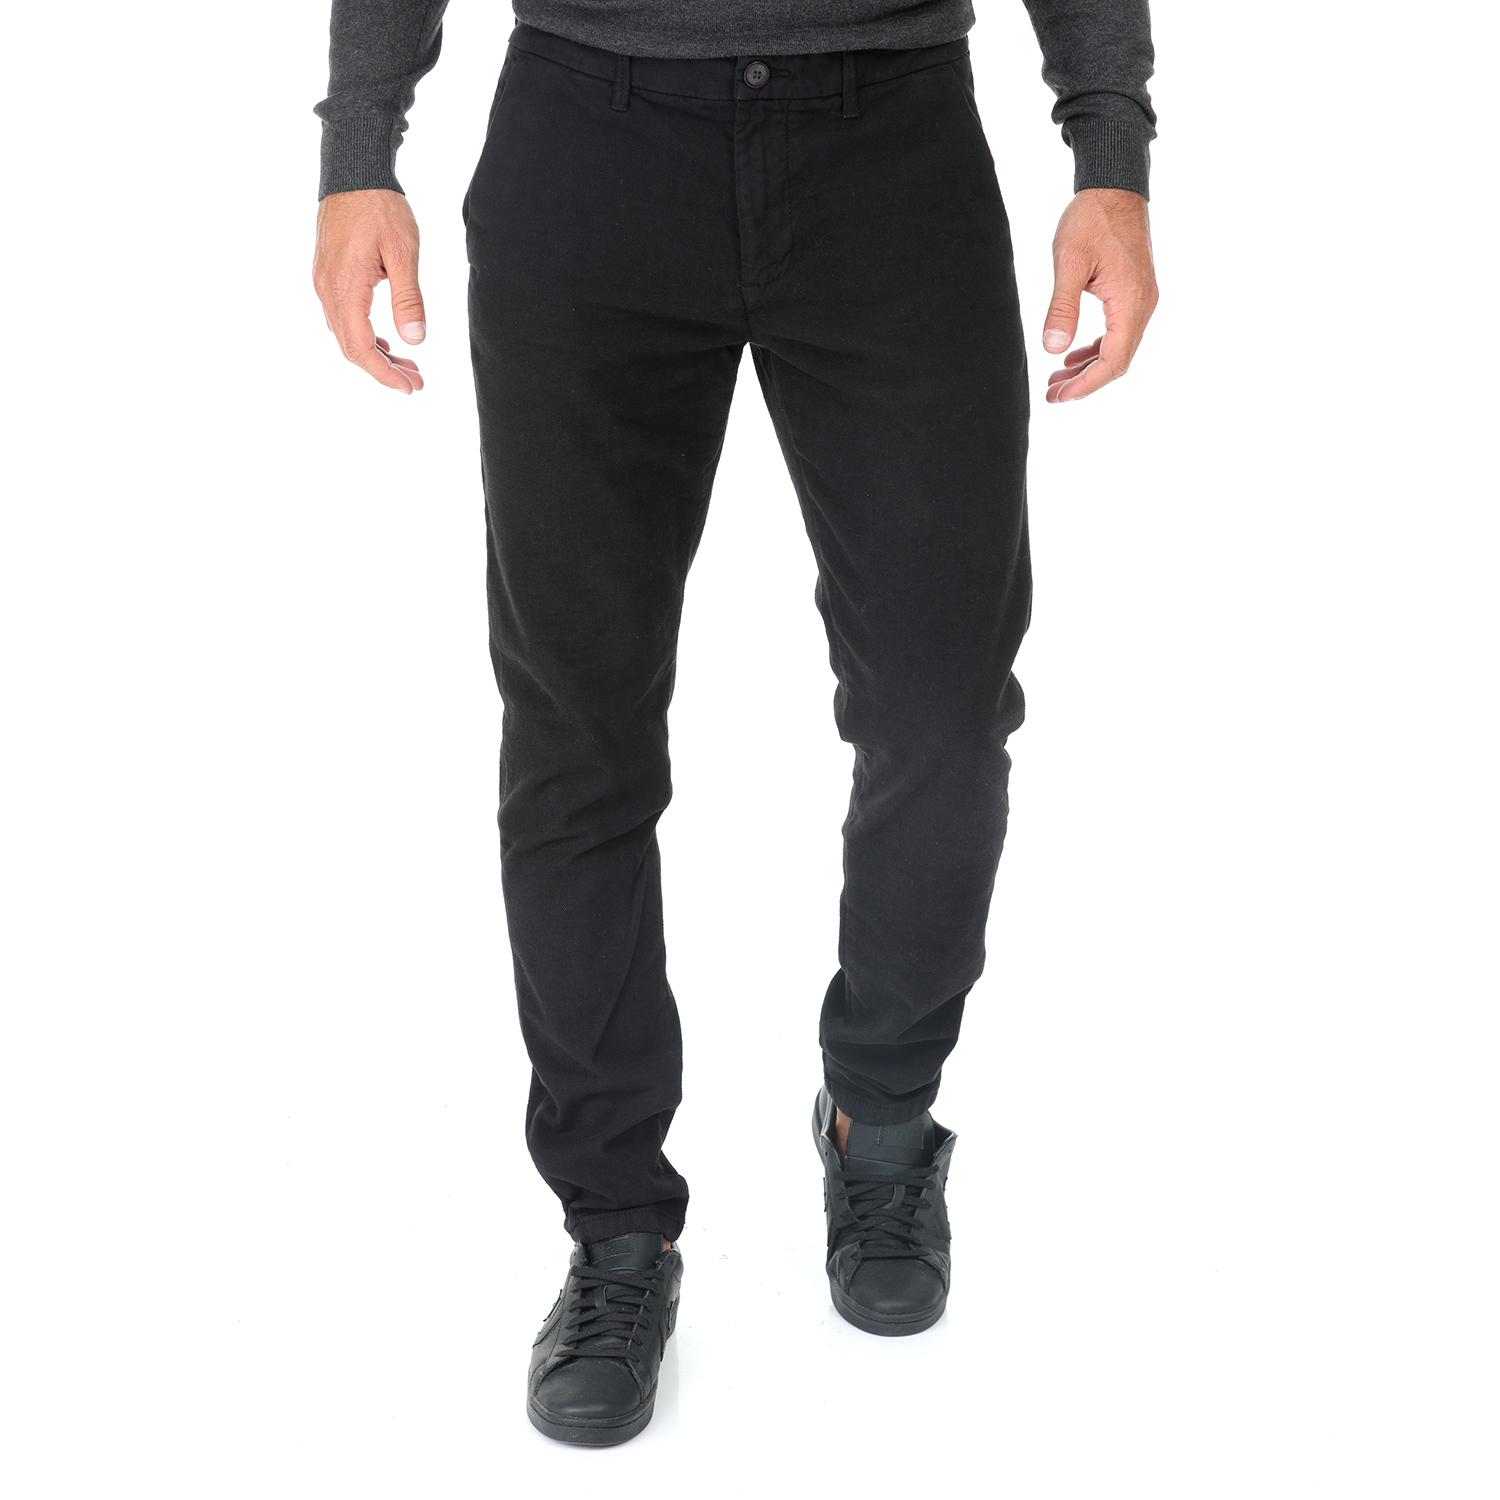 Ανδρικά/Ρούχα/Παντελόνια/Chinos SSEINSE - Ανδρικό παντελόνι SSEINSE TK A μαύρο